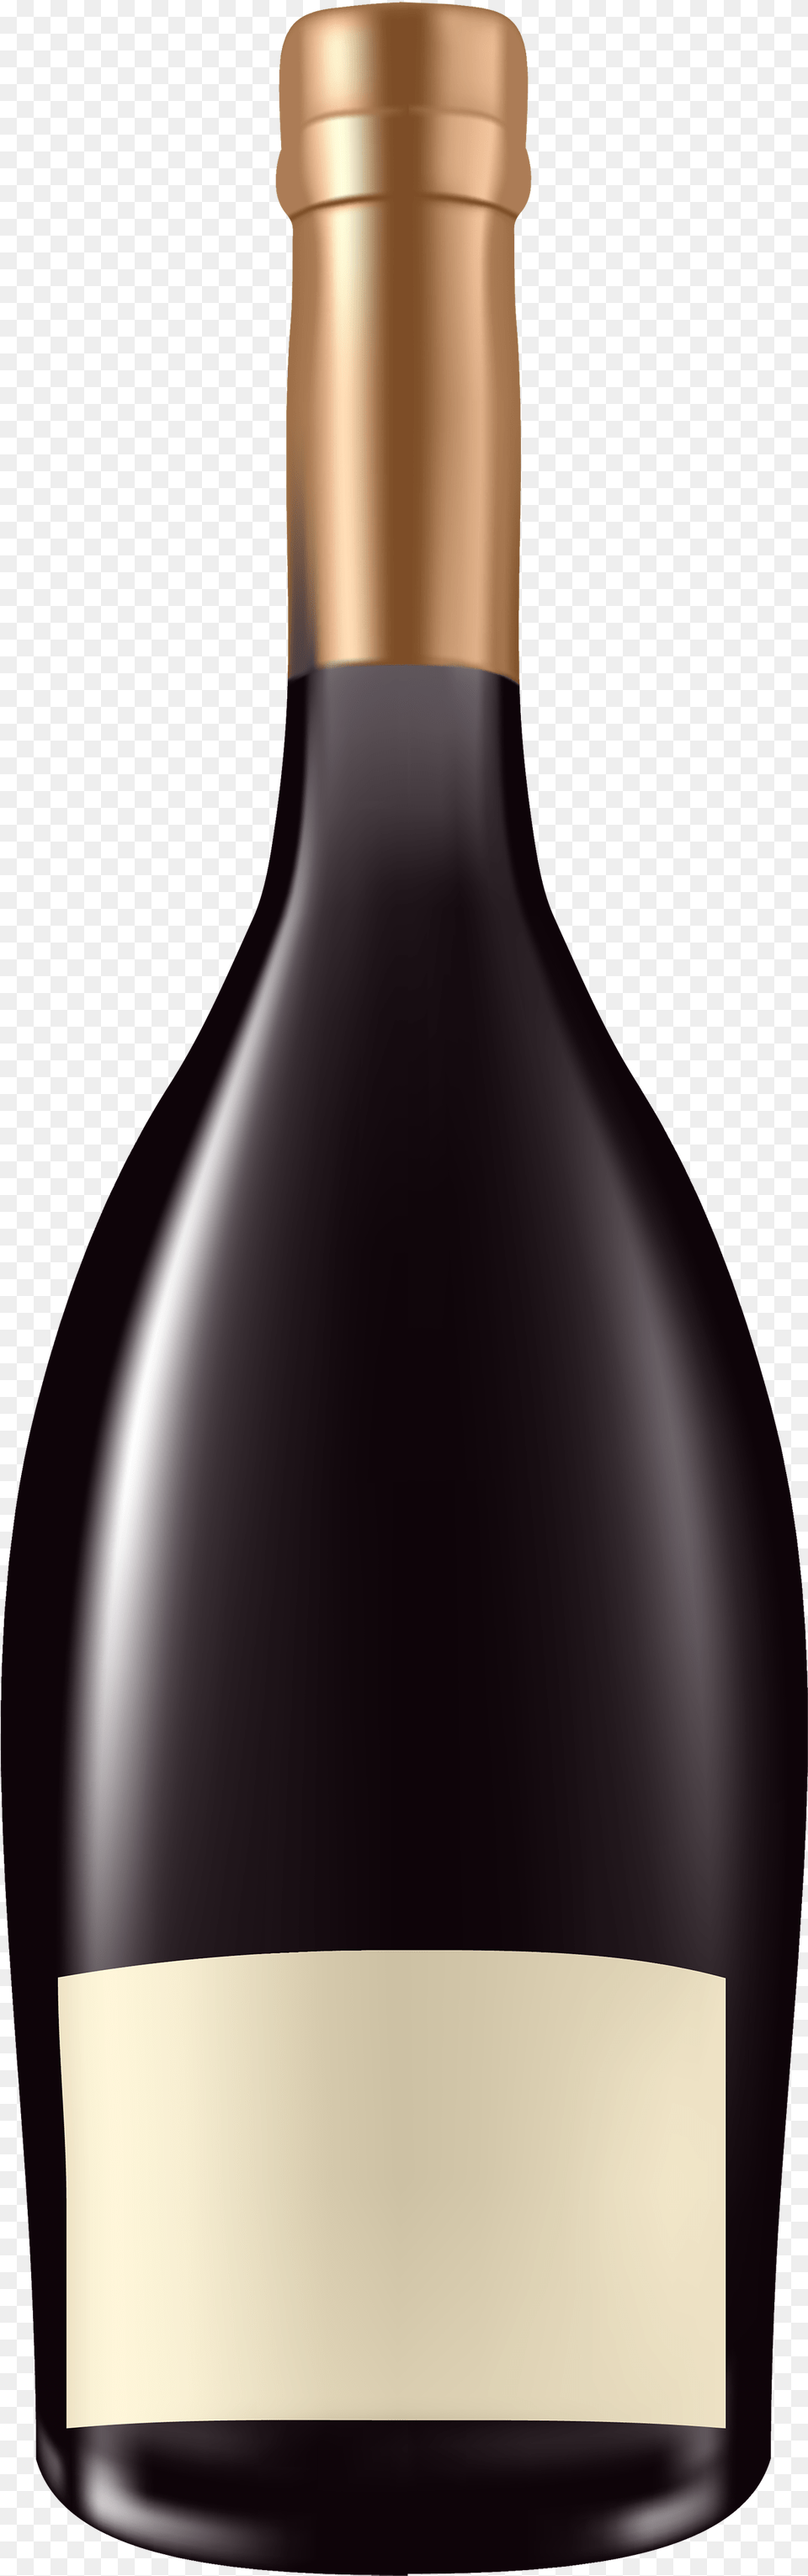 Clipart Best Web Alcohol Bottles Clip Art, Beverage, Bottle, Liquor, Wine Free Png